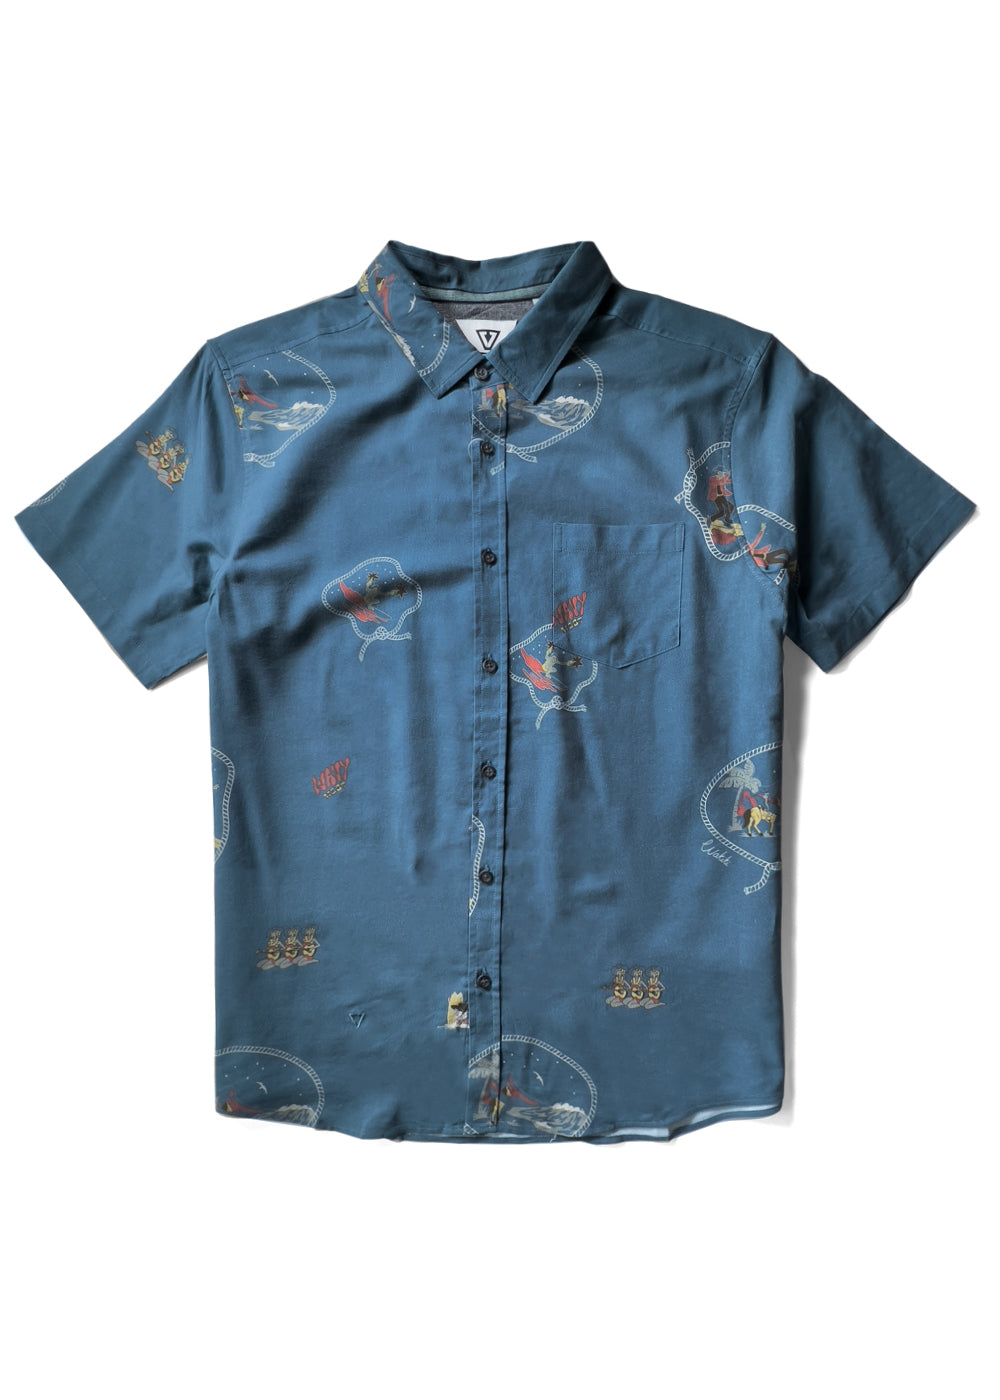 Soren Wavy West Eco Ss Shirt – Vissla.com